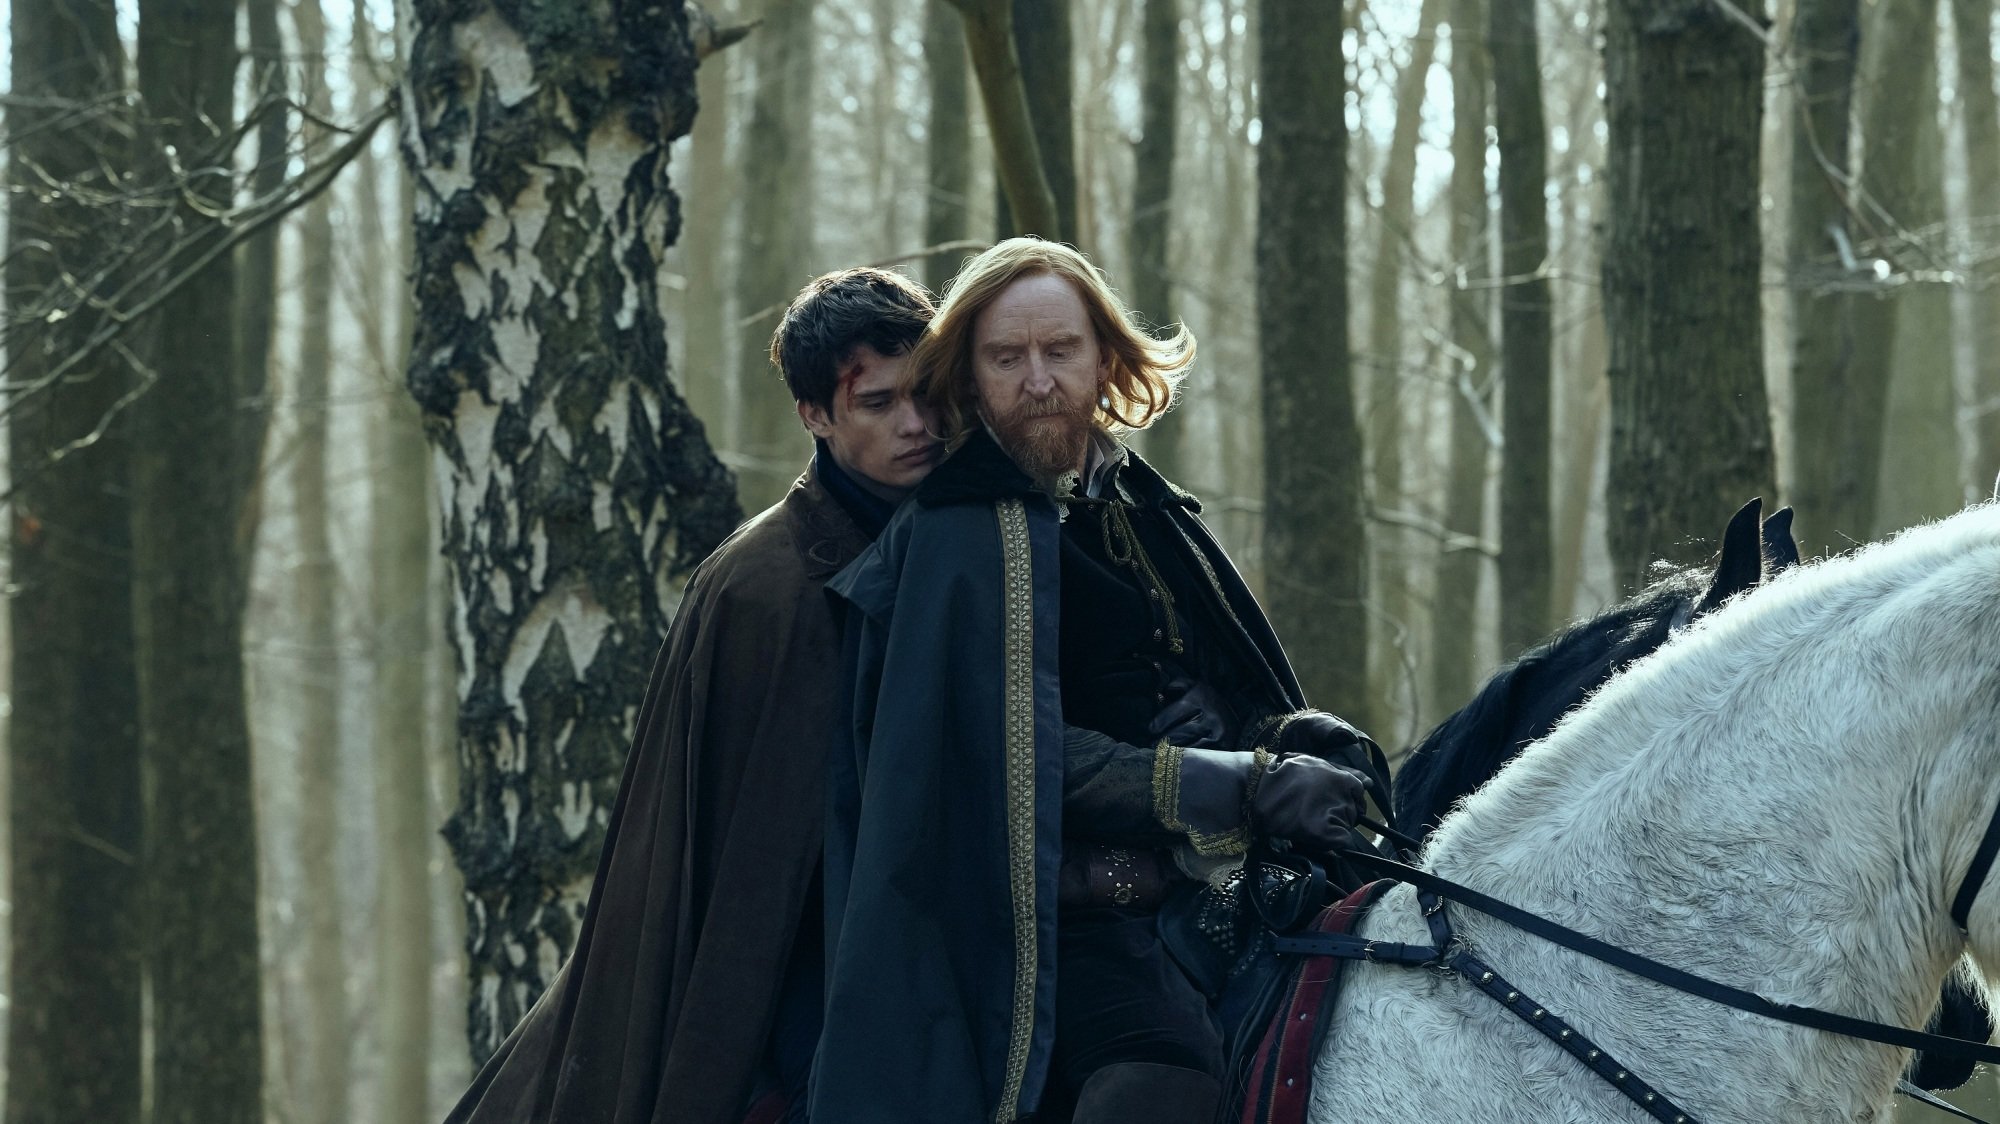 George Villiers, le roi Jacques VI et moi chevauchant un cheval blanc à travers les bois.